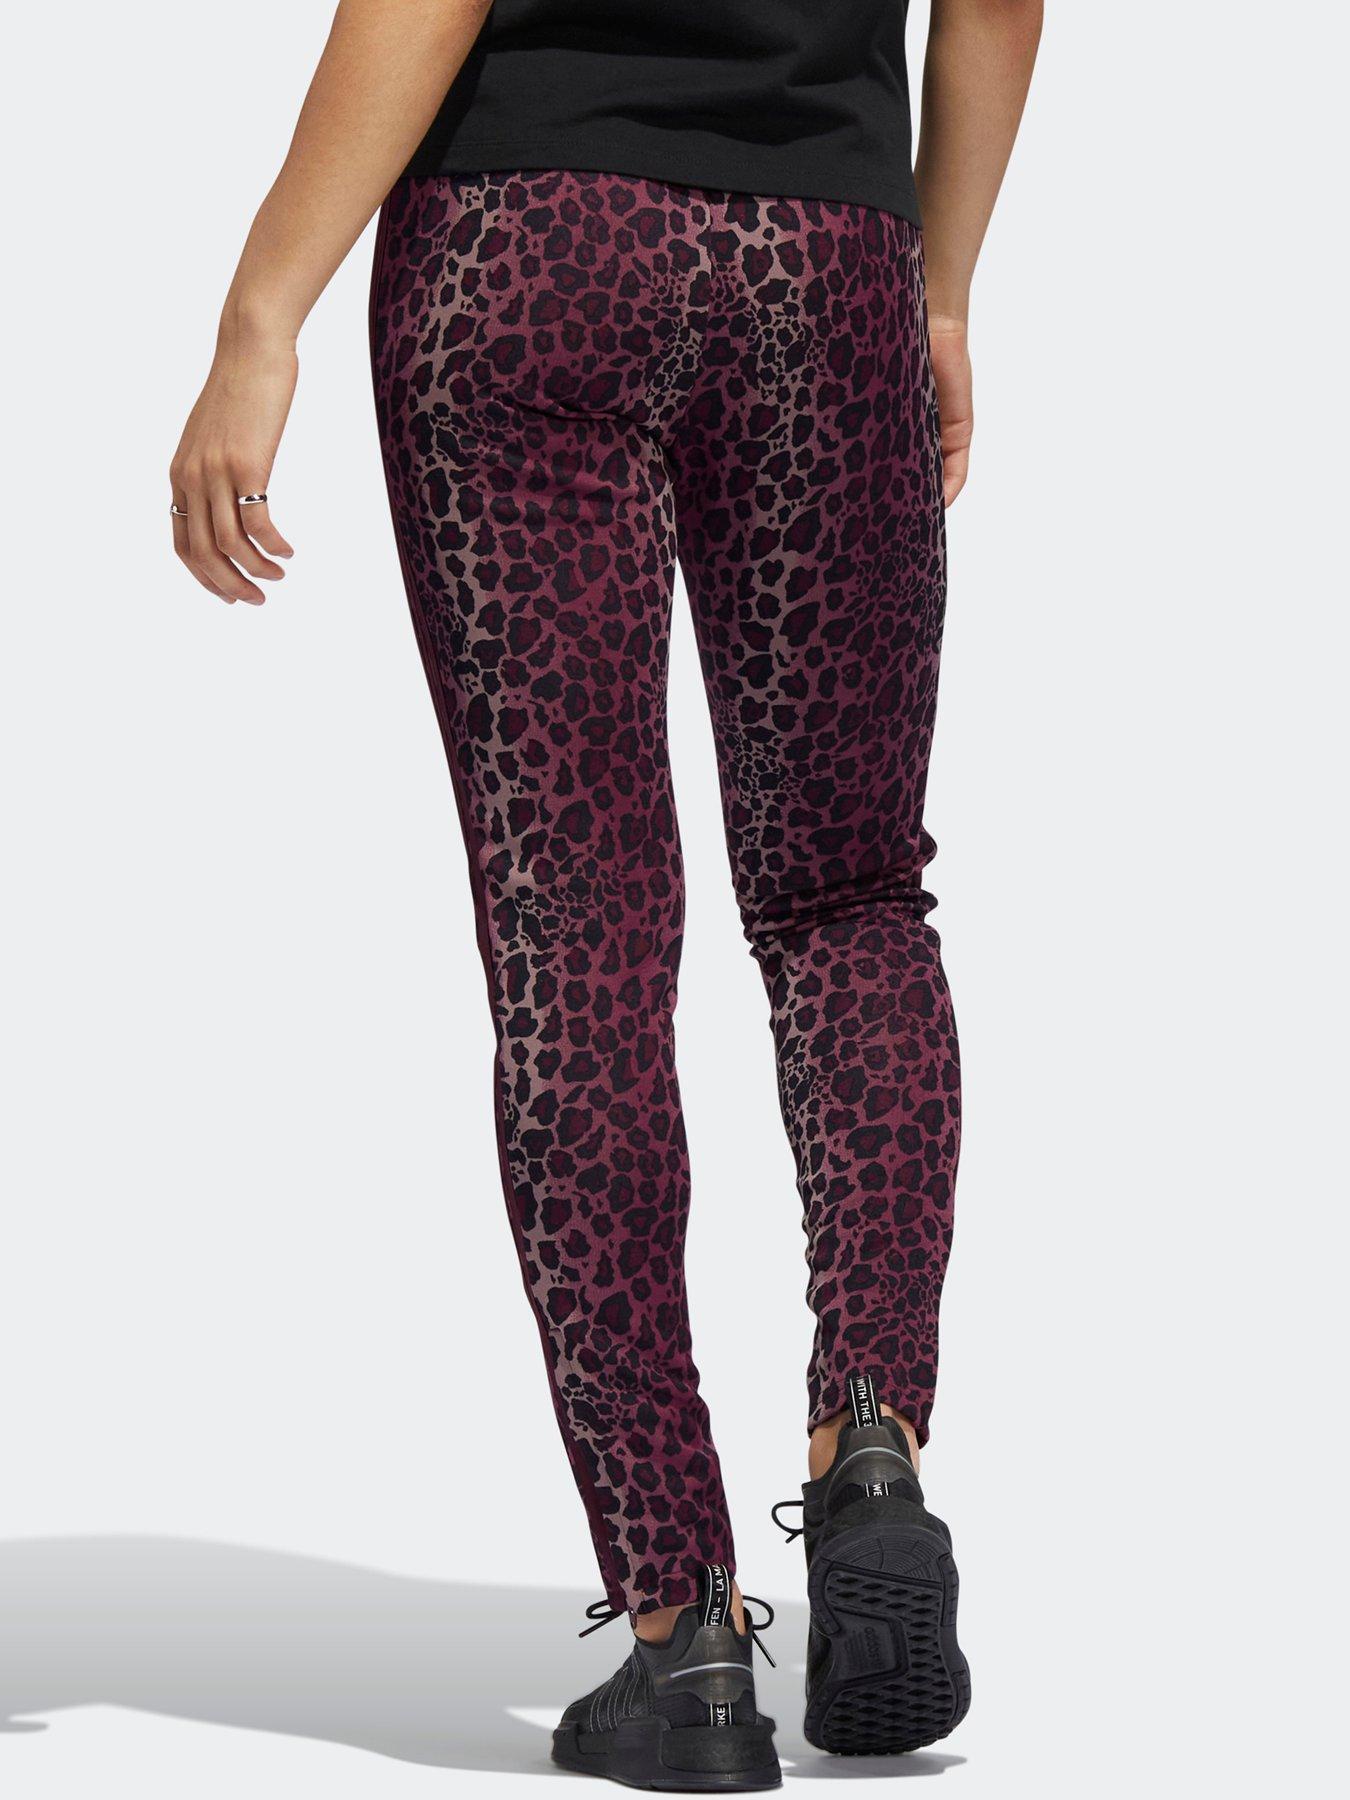 adidas Originals Leopard Pants - Maroon